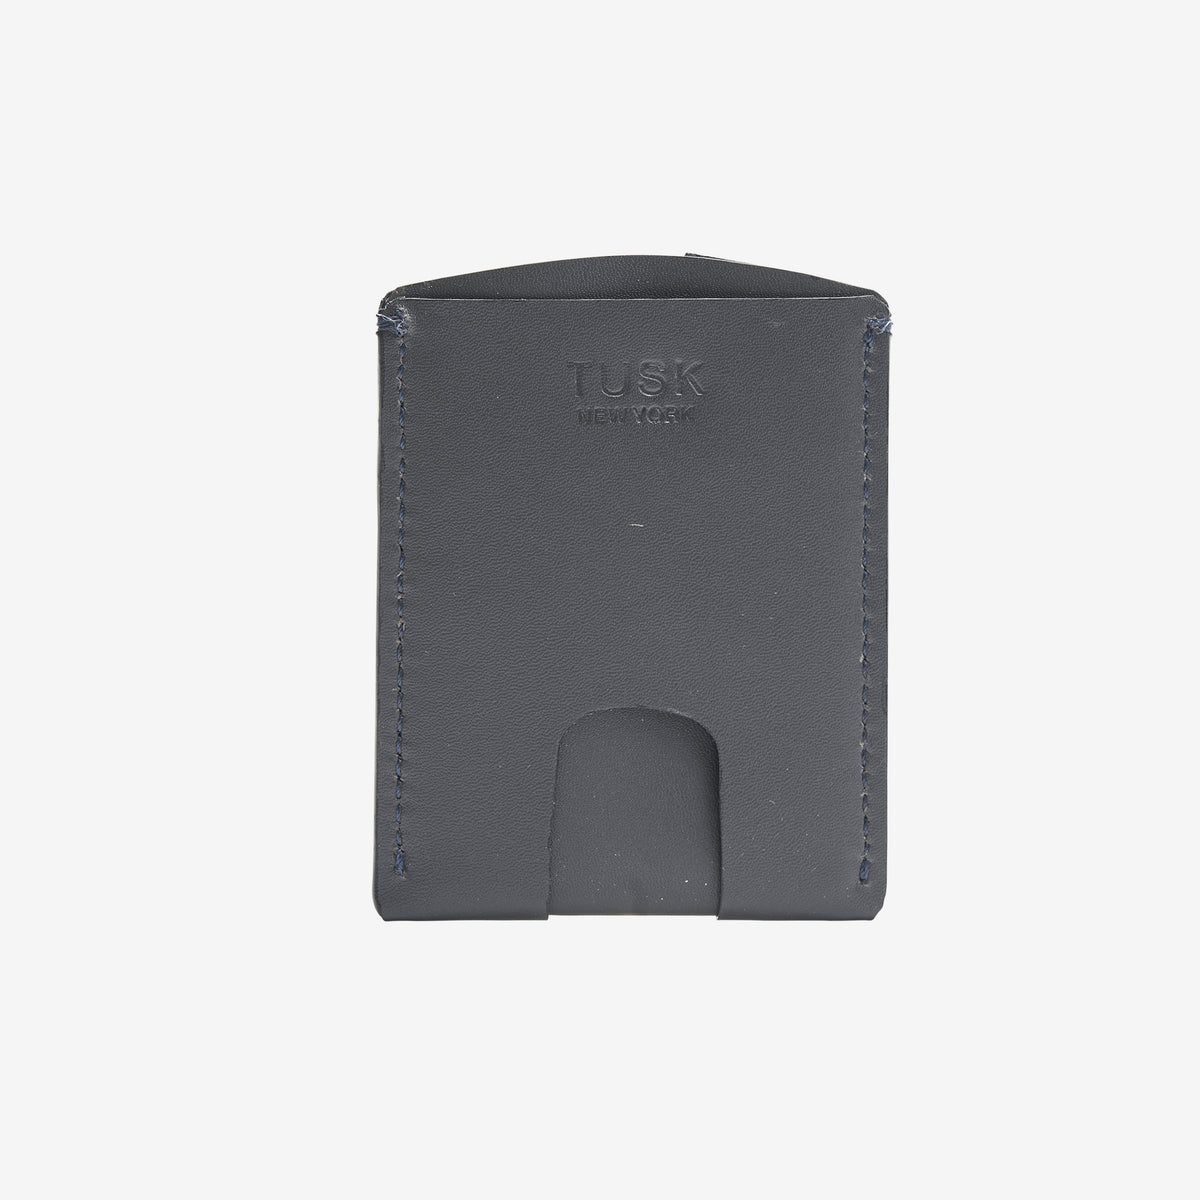 tusk-190-mens-leather-slim-slide-card-case-charcoal-front